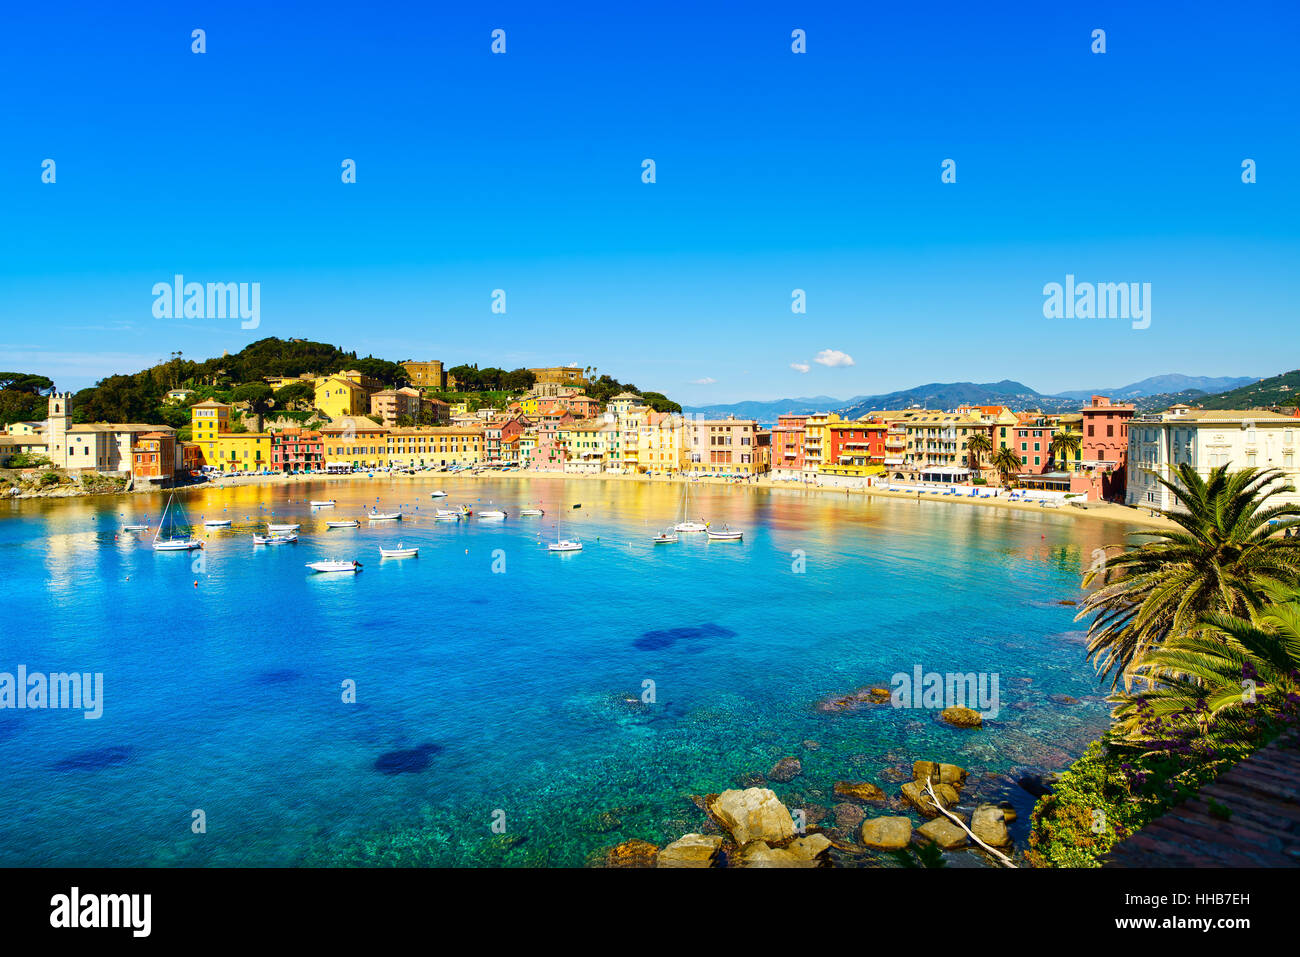 Sestri Levante silence bay or Baia del Silenzio sea harbor and beach view on morning. Liguria, Italy. Stock Photo